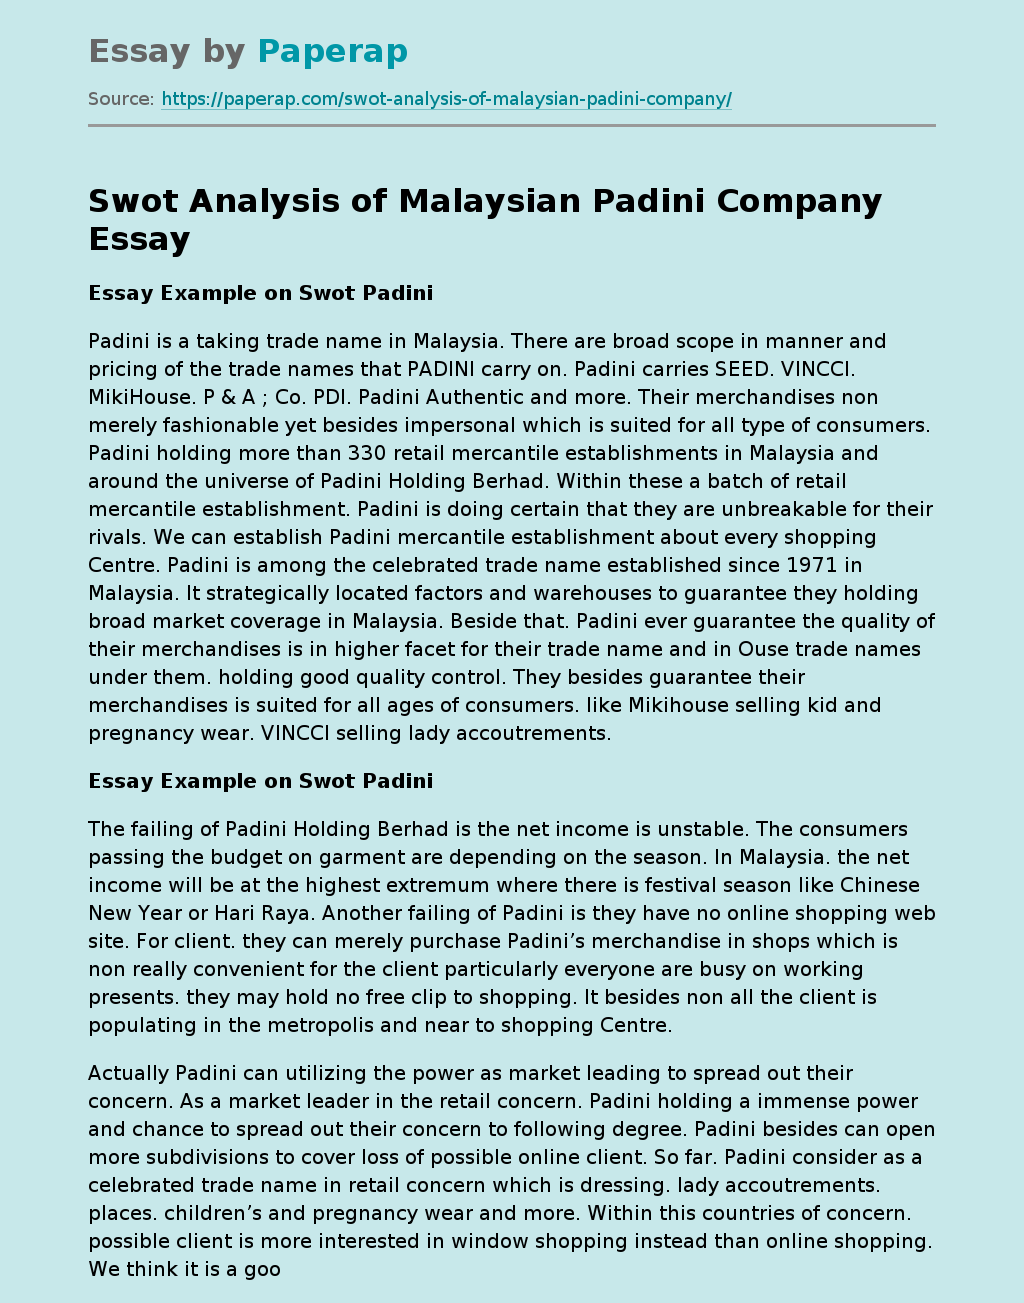 Swot Analysis of Malaysian Padini Company